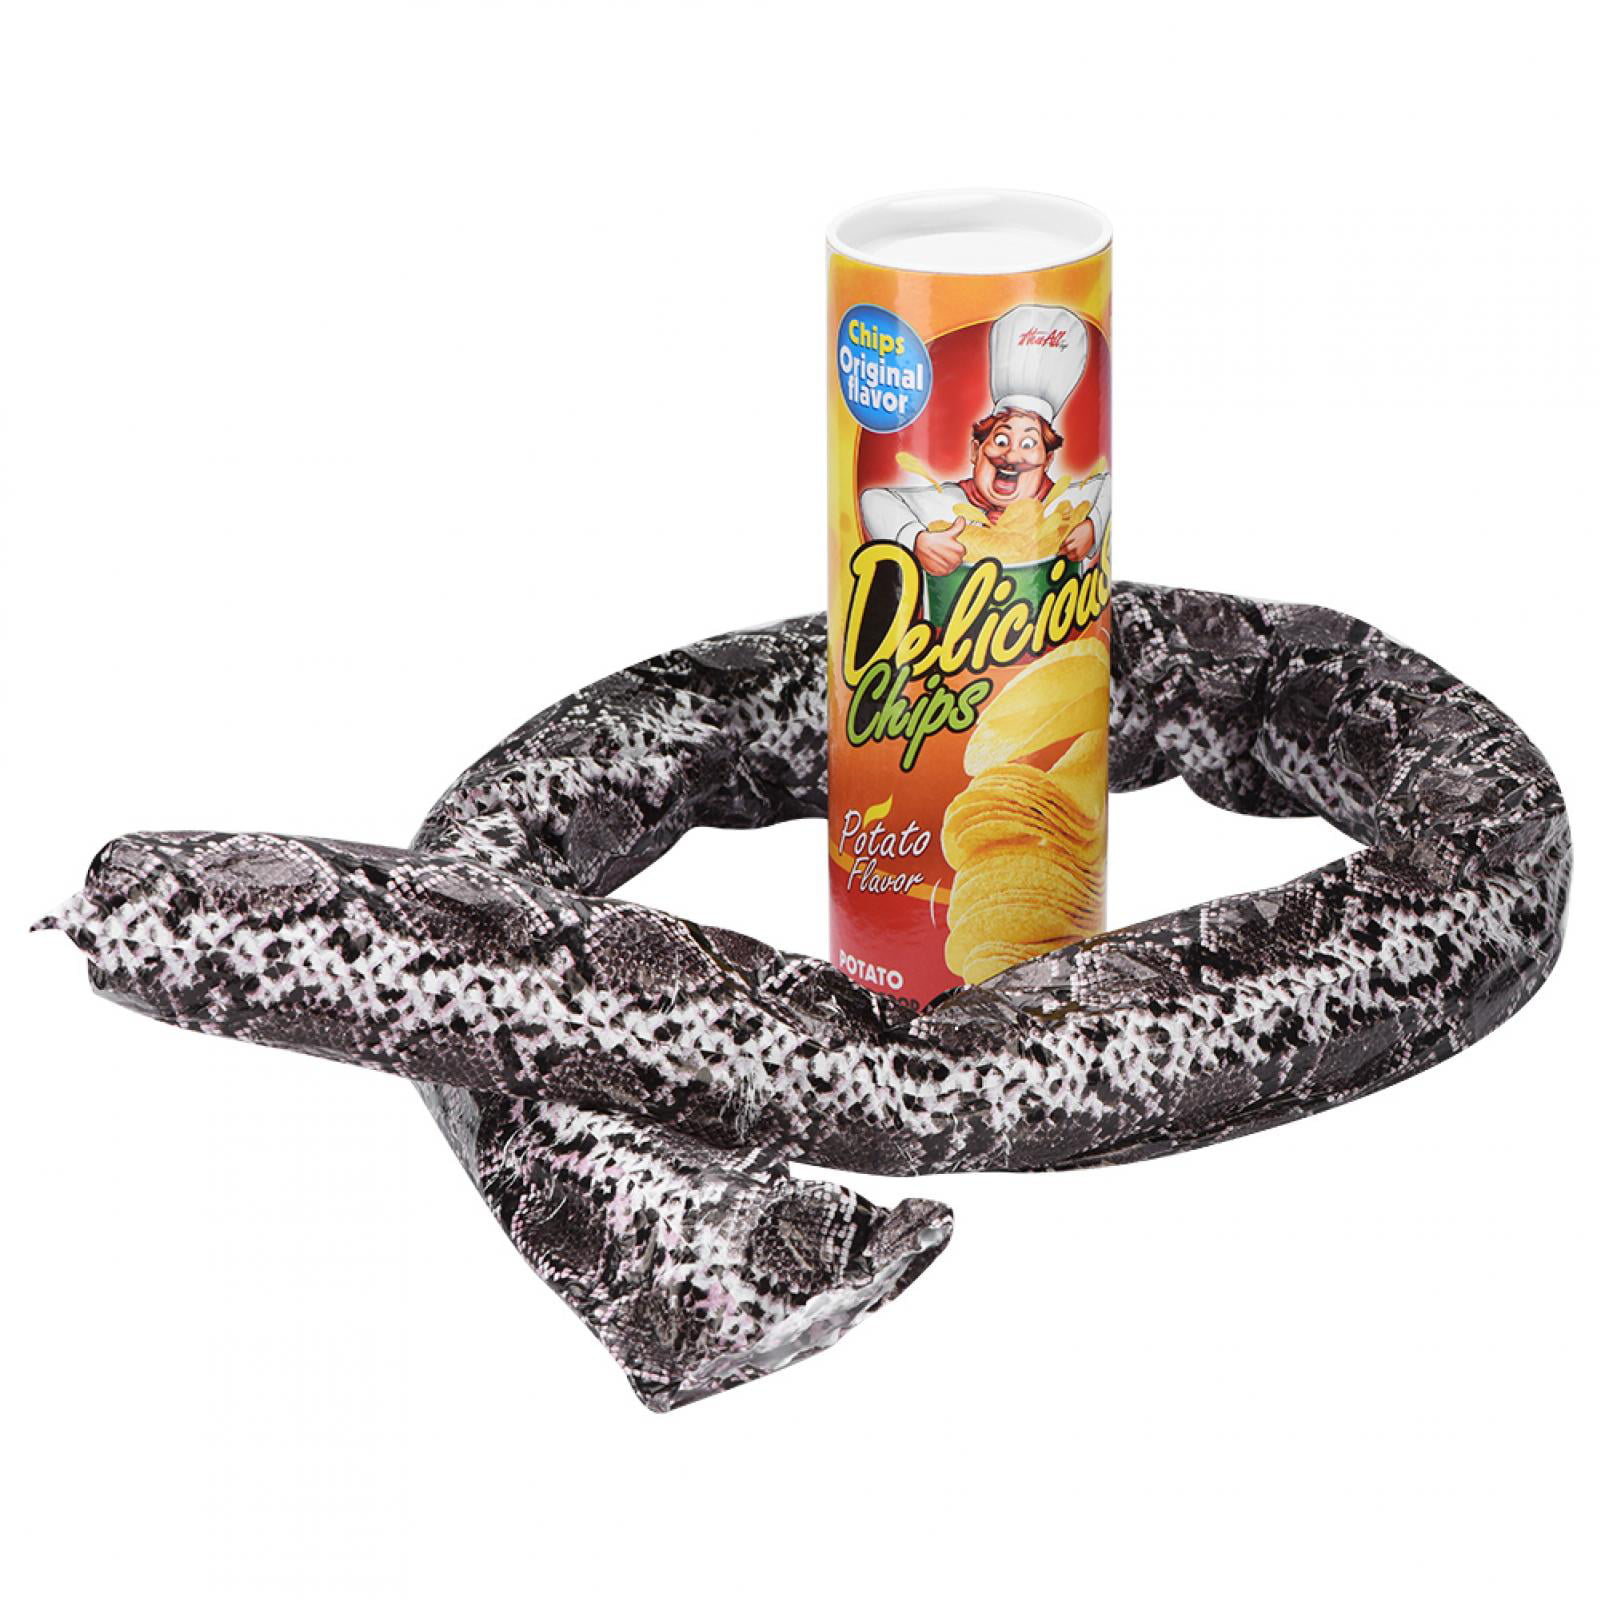 1 Pcs Trick Potato Chip Can Novelty Joke Prank Jump Snake Funny Tricky Toy VQ 